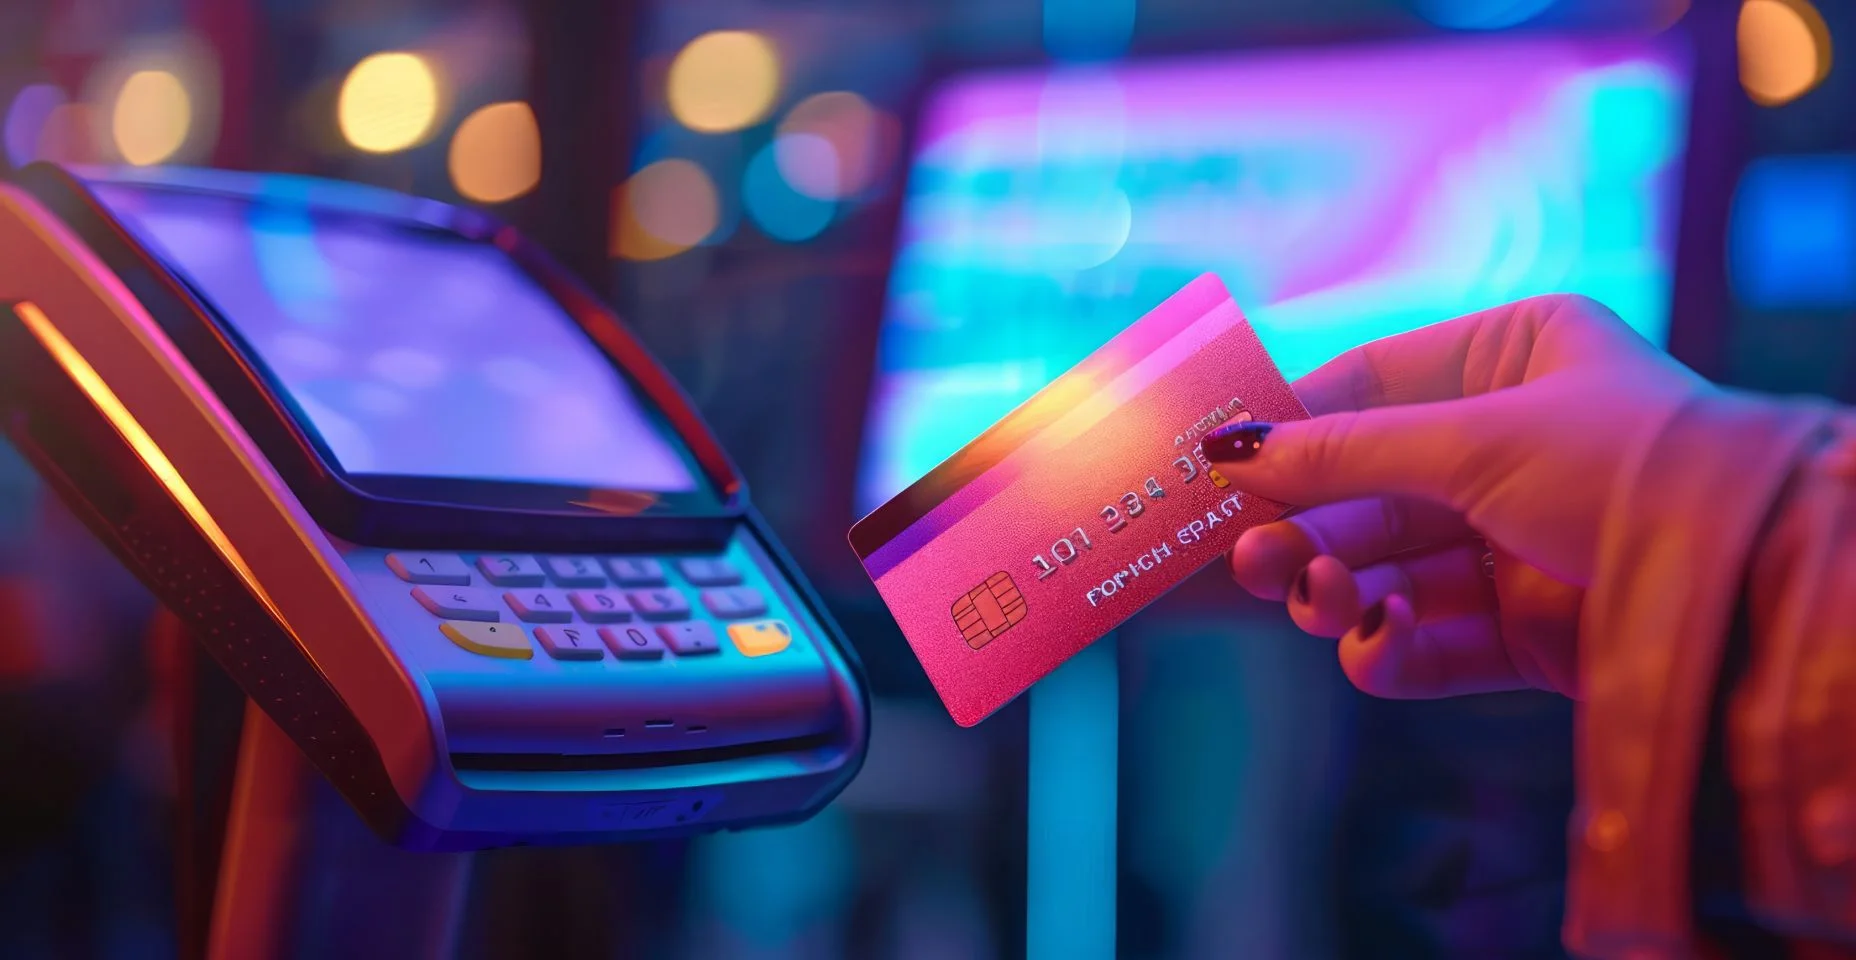 Uma cena futurística com um cartão de crédito brilhante e sem contato em poder de um cliente, ativando um terminal de pagamento sem toque com telas holográficas